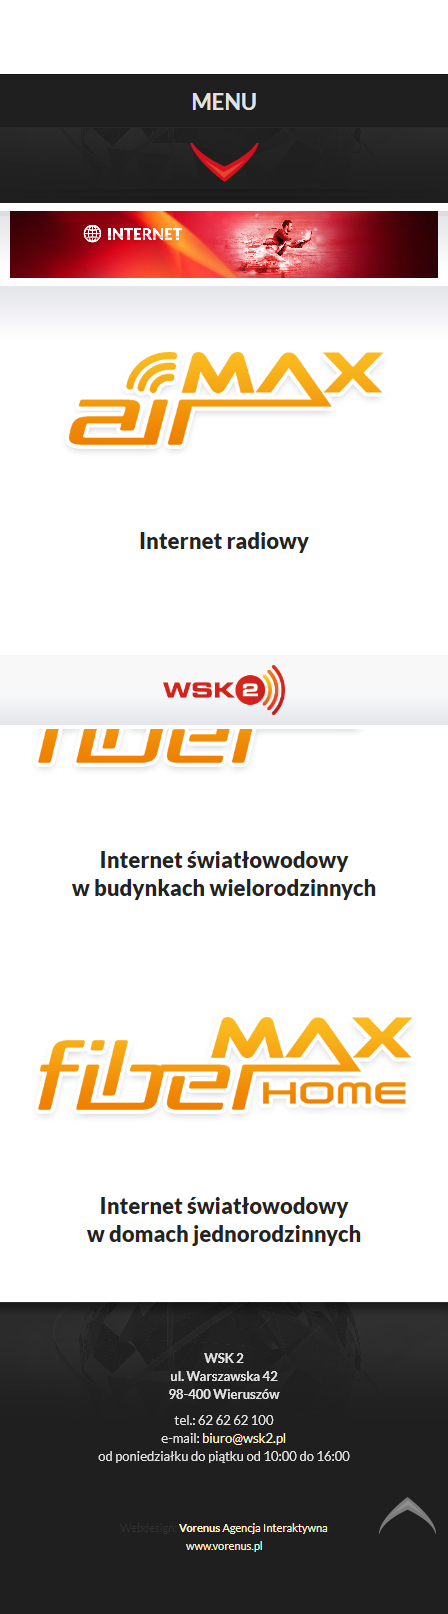 WSK2 - Prezentacja strony www. Mobile